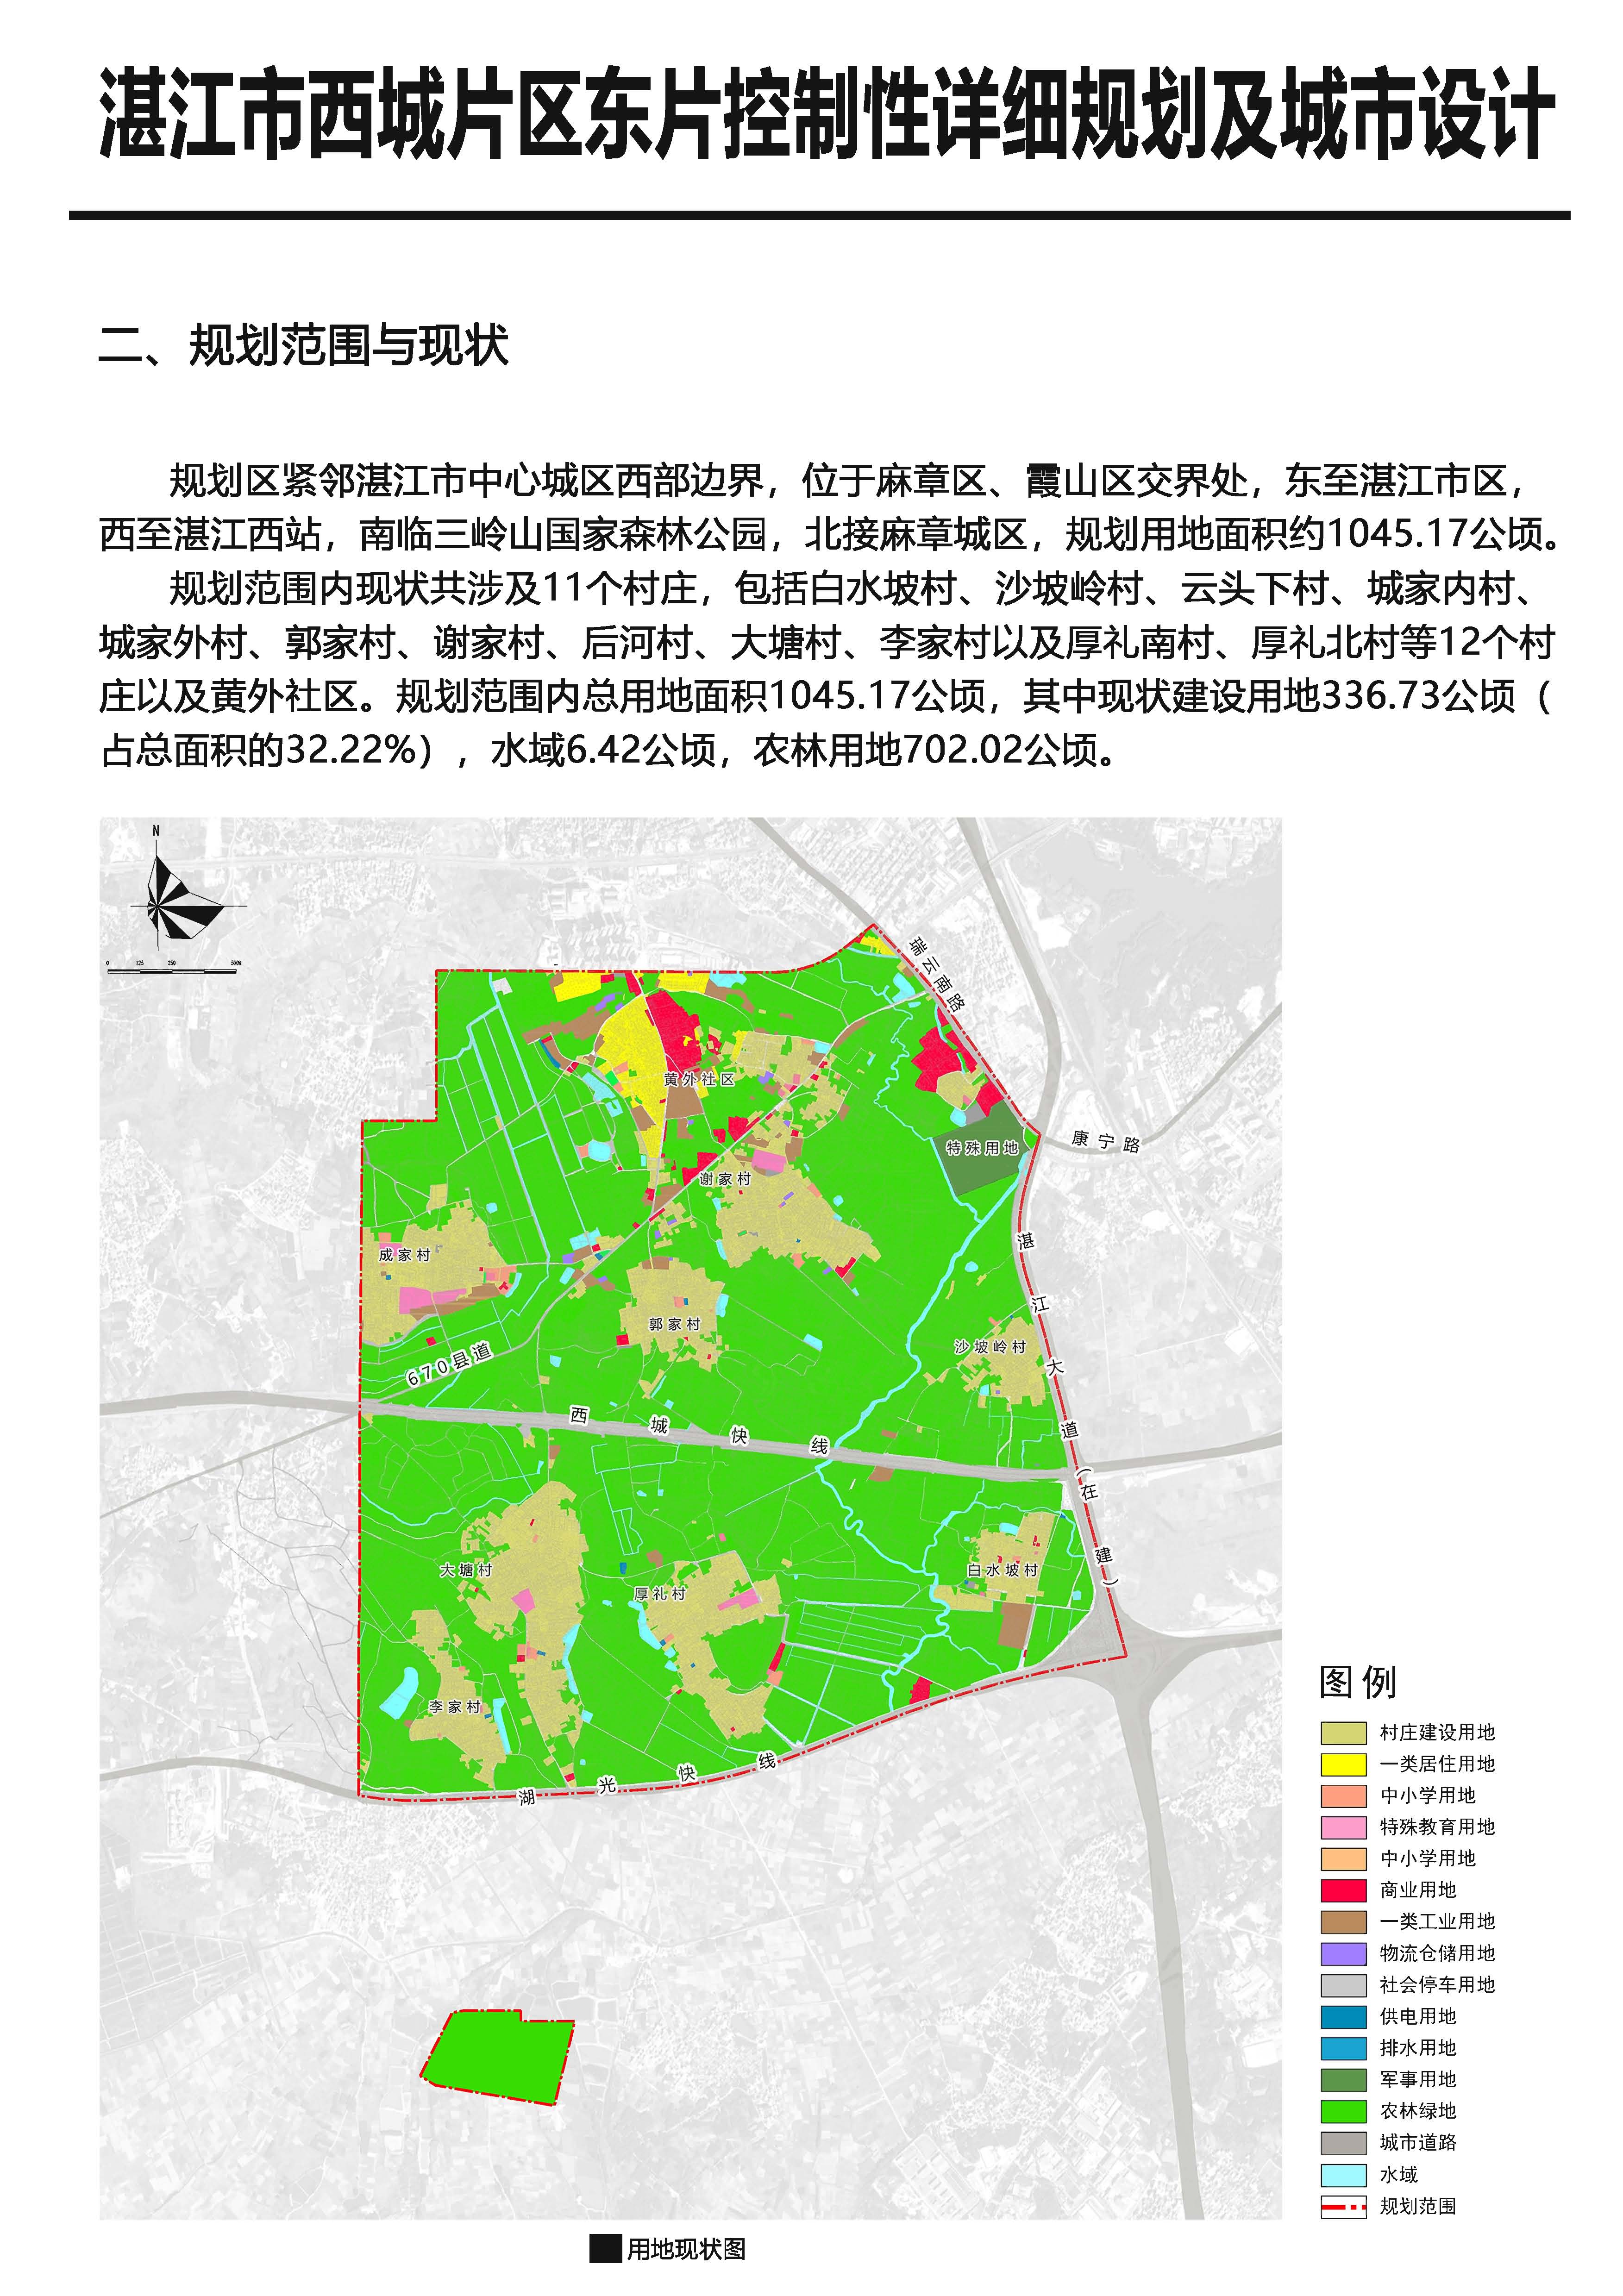 《湛江西城东片区控制性详细规划及城市设计》批后公告_页面_3.jpg